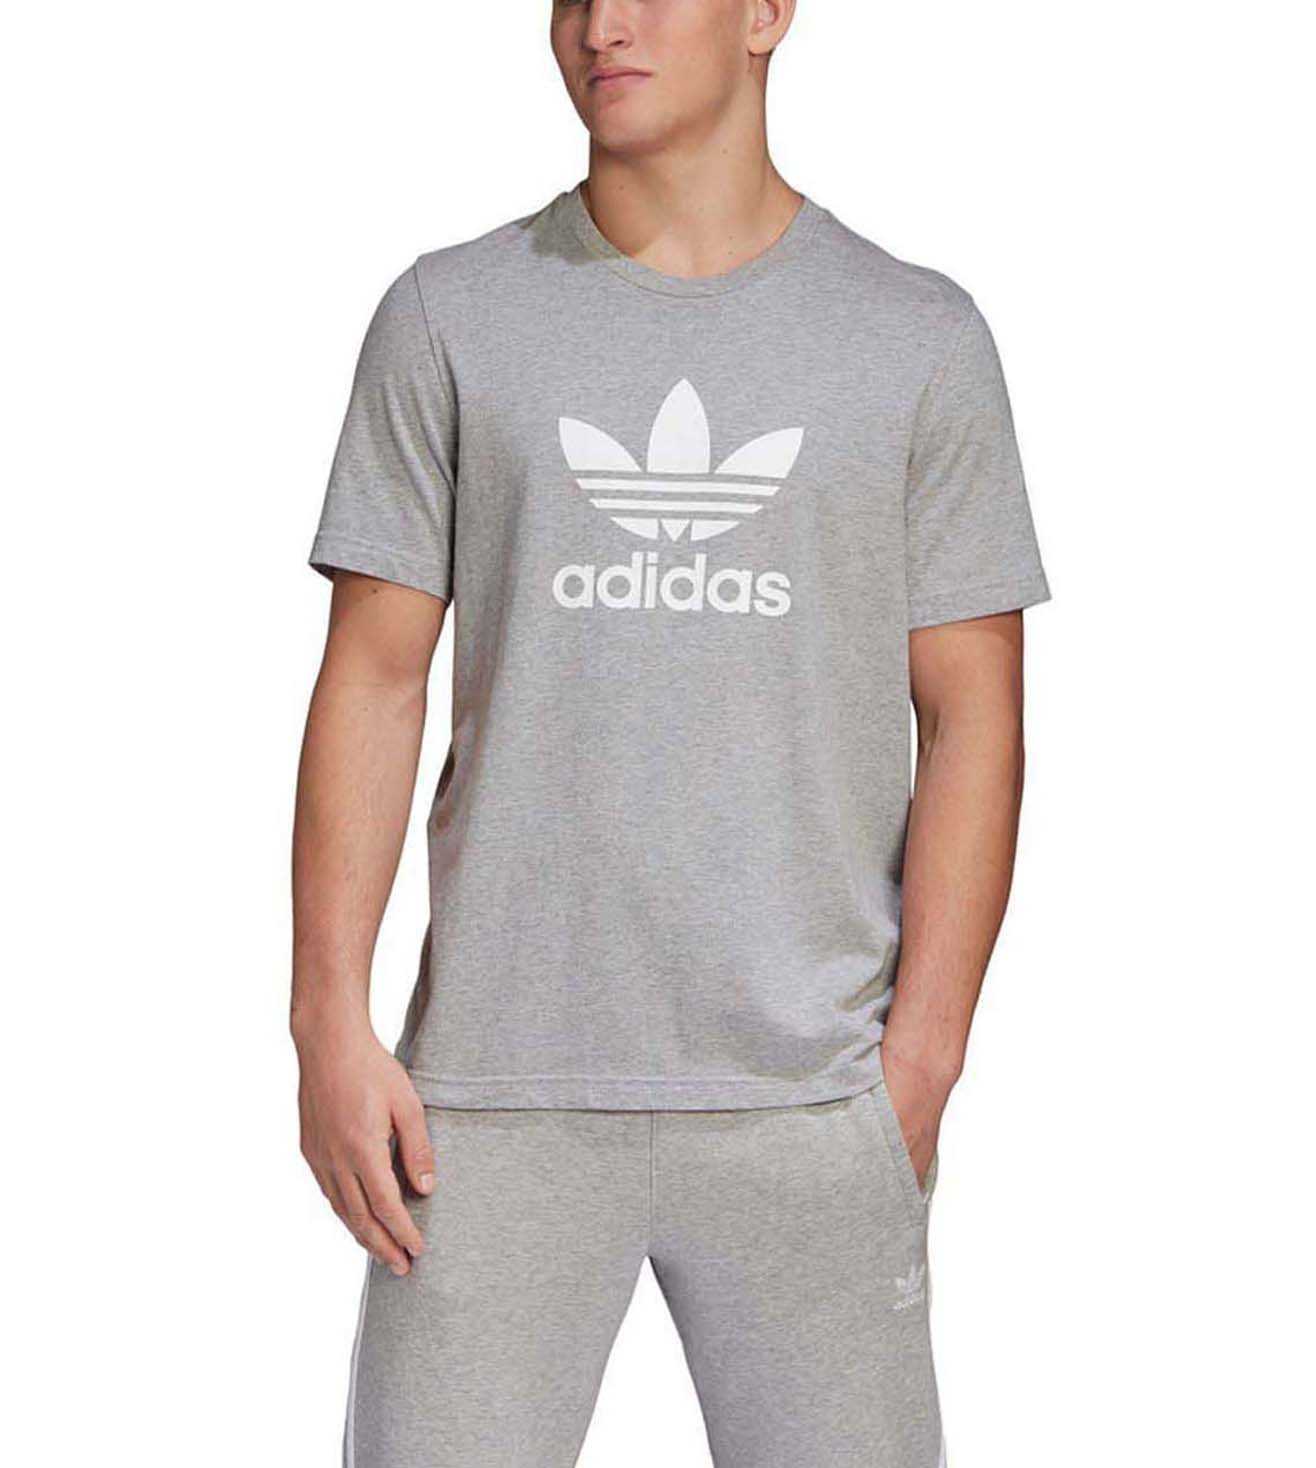 light grey adidas shirt